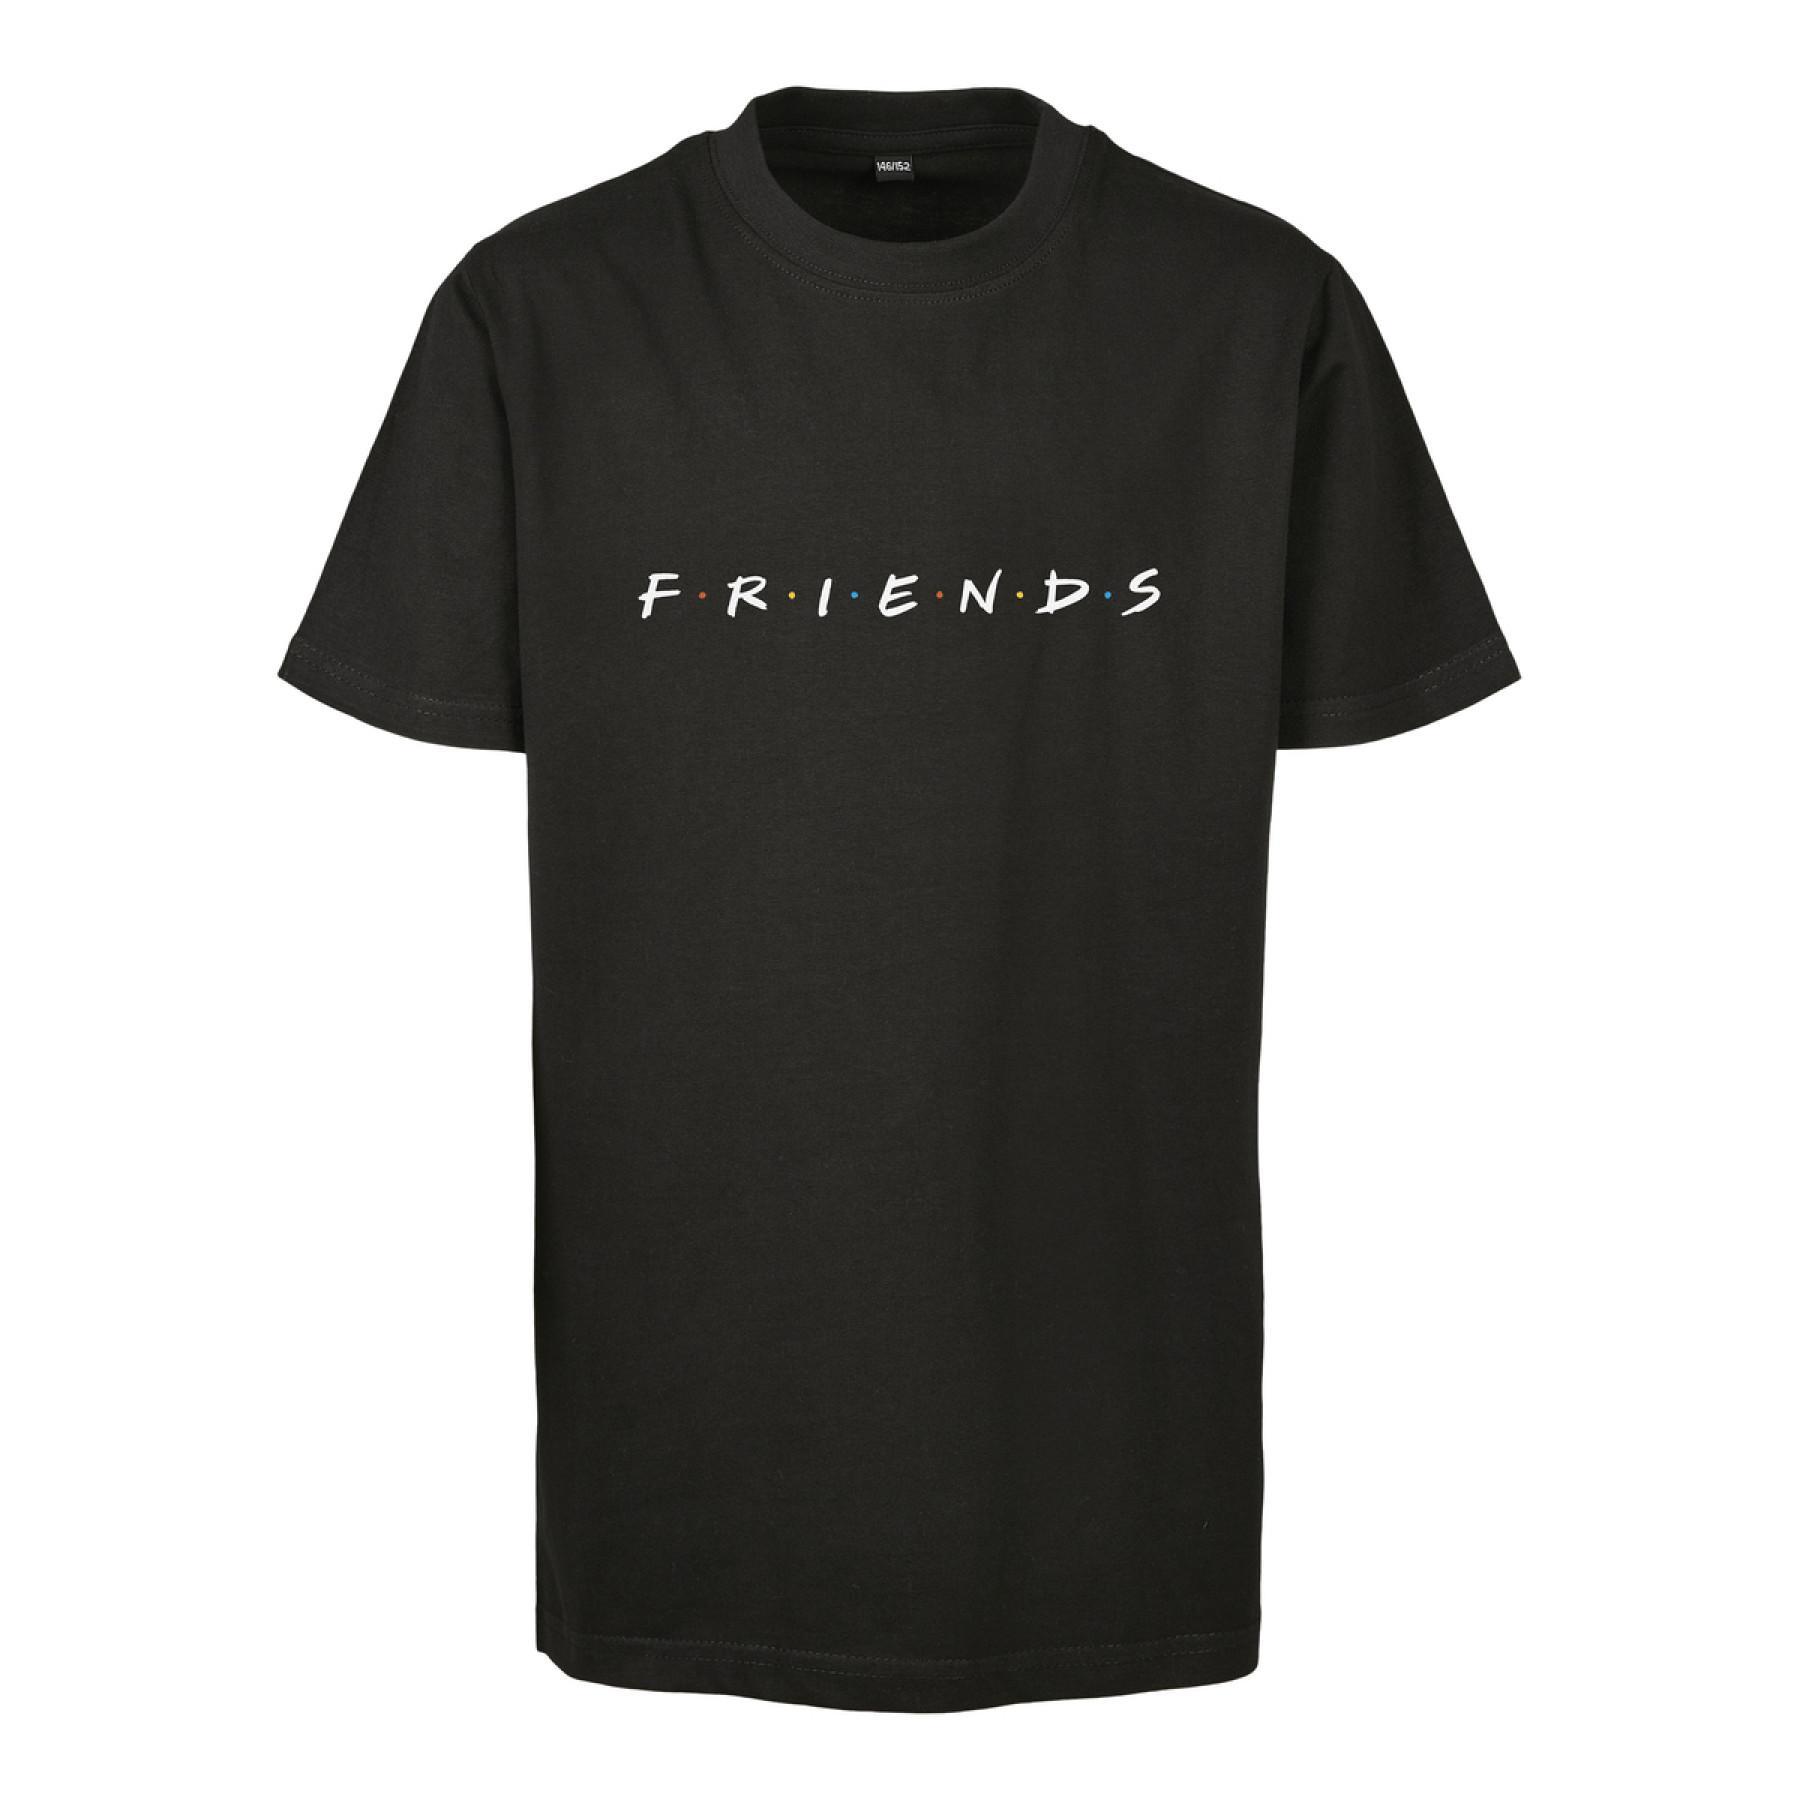 Camiseta niños Mister Tee friends logo